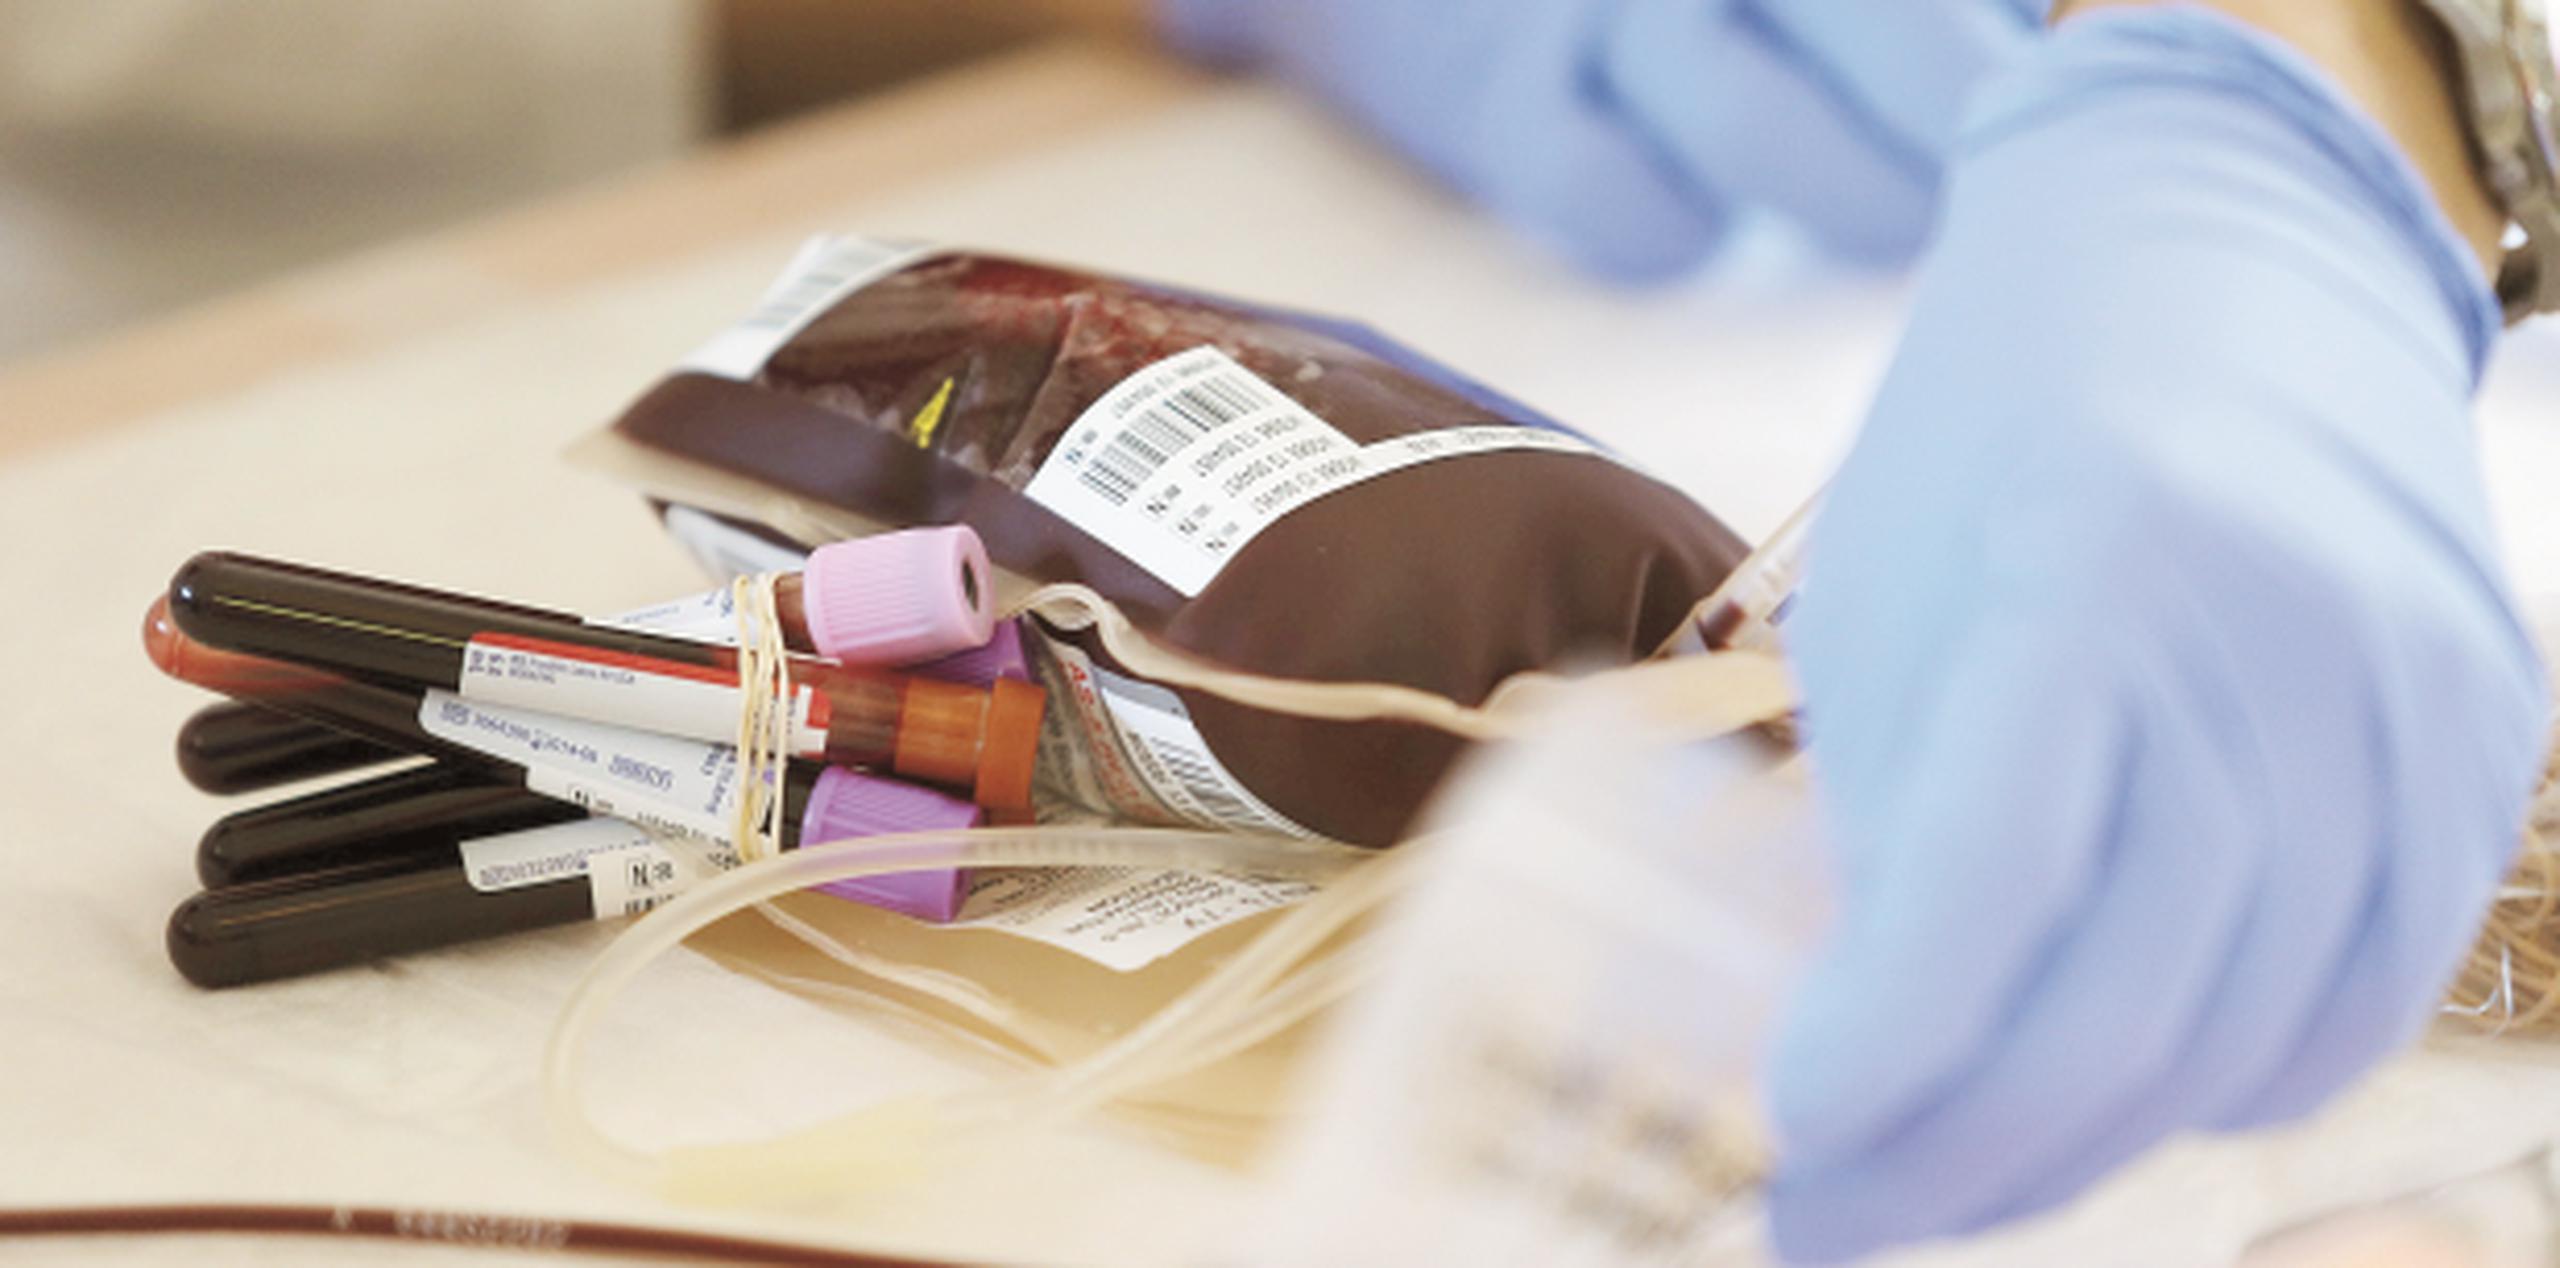 Las donaciones ahora requieren de un quinto tubo de sangre para la prueba del sika, además de la pinta para donación y los cuatro tubos que se colectaban. (Archivo)